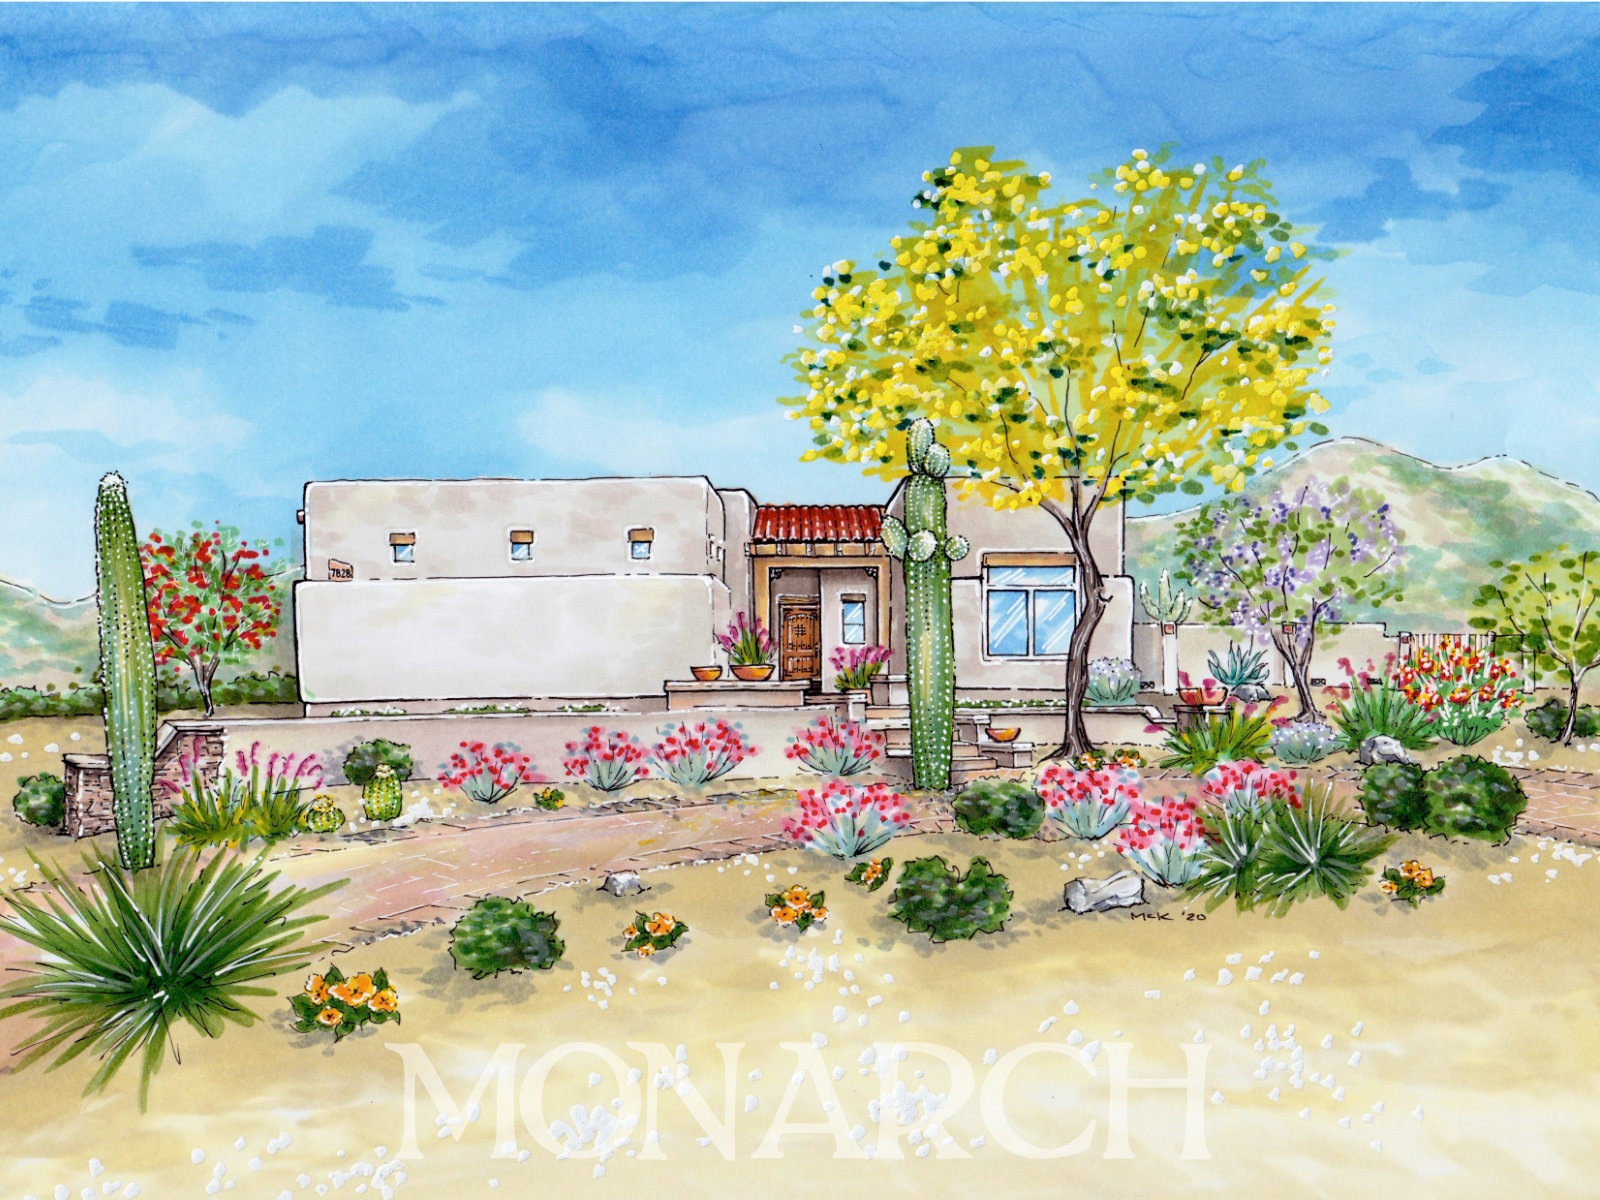 Mesa Arizona – Monarch Creative Studio